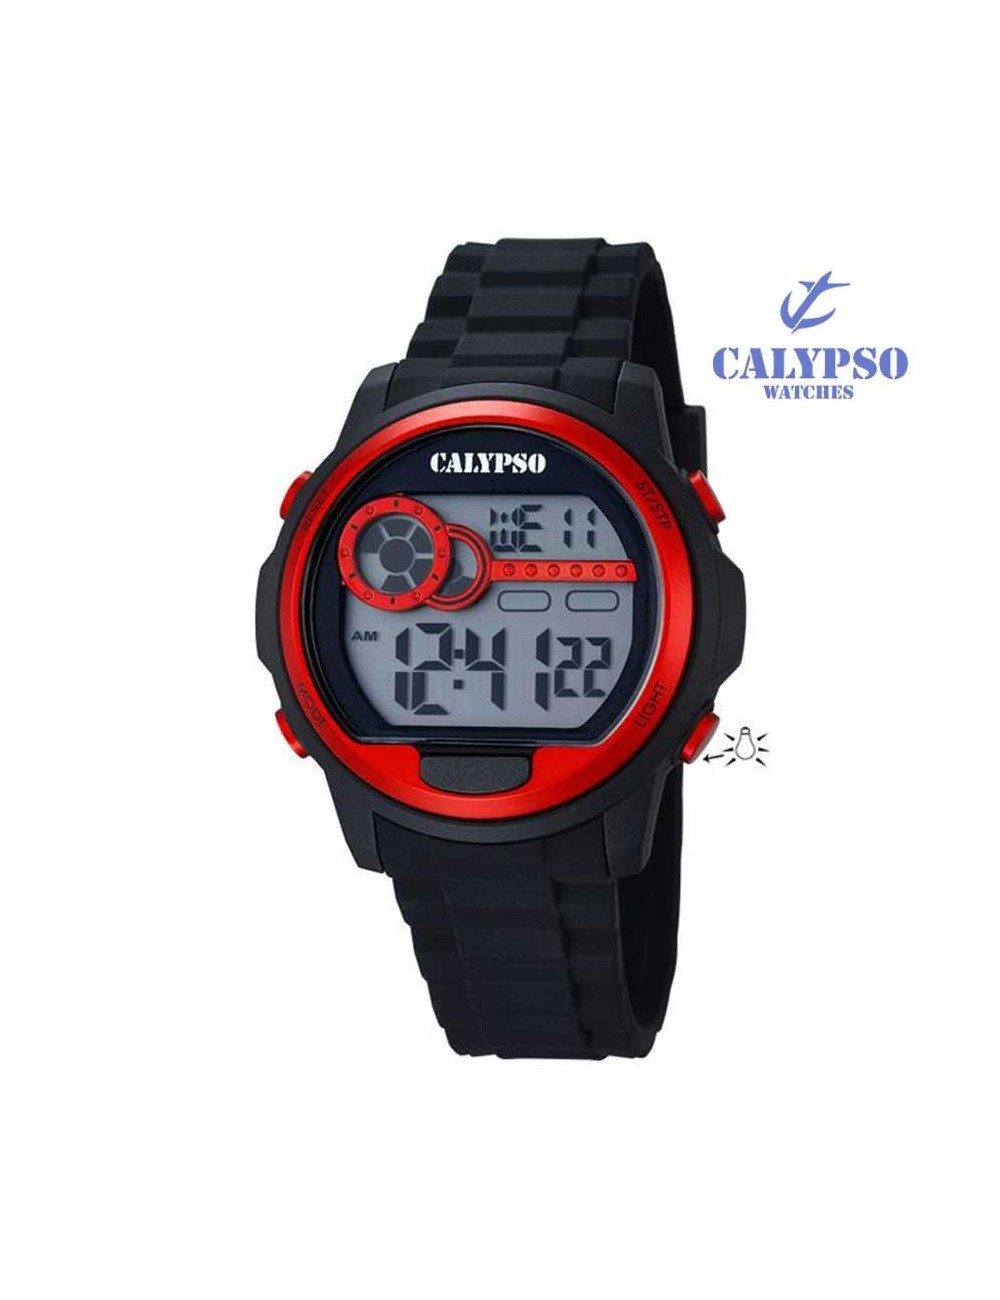 Reloj Calypso Hombre k56105 - Relojes Digitales